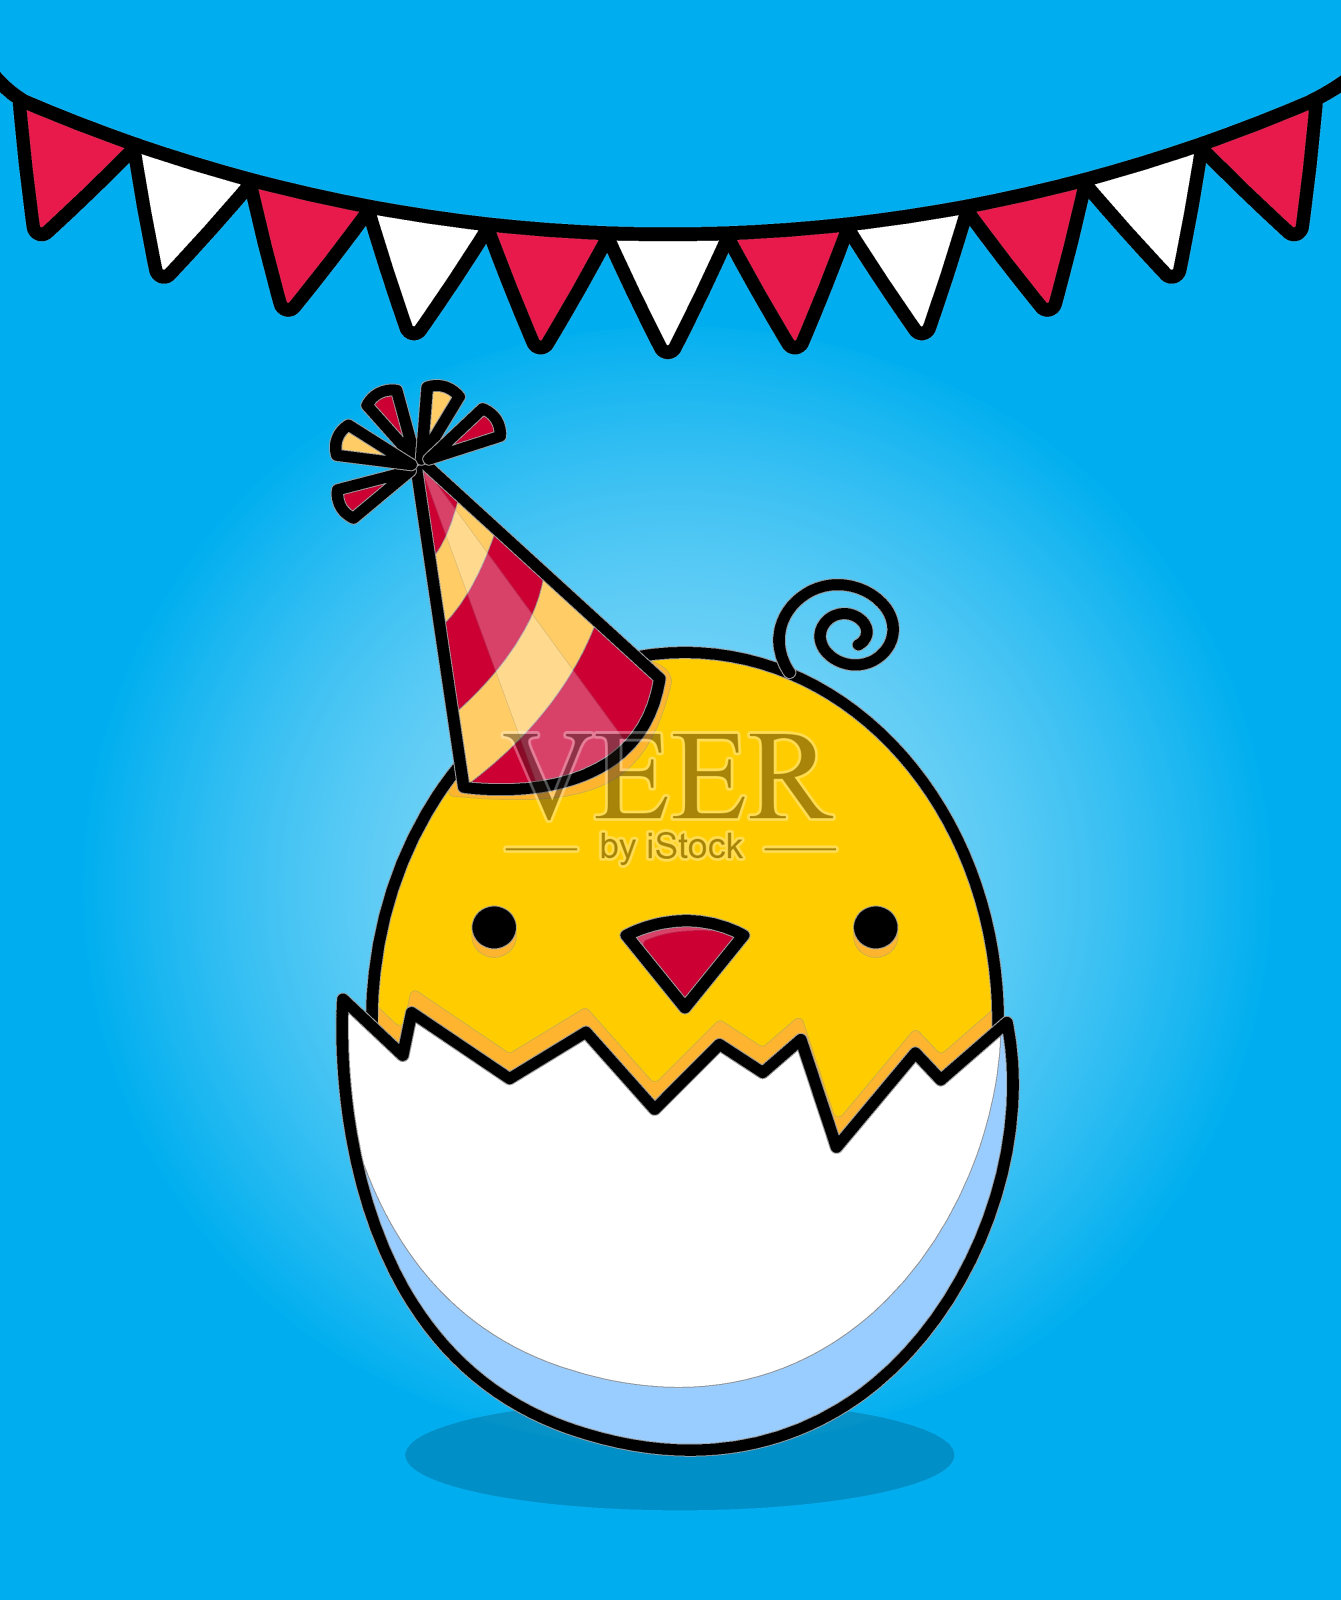 生日快乐鸡和鸡蛋 库存例证. 插画 包括有 表达式, 朋友, 逗人喜爱, 图象, 童年, 相当, 乐趣, 节假日 - 41963775